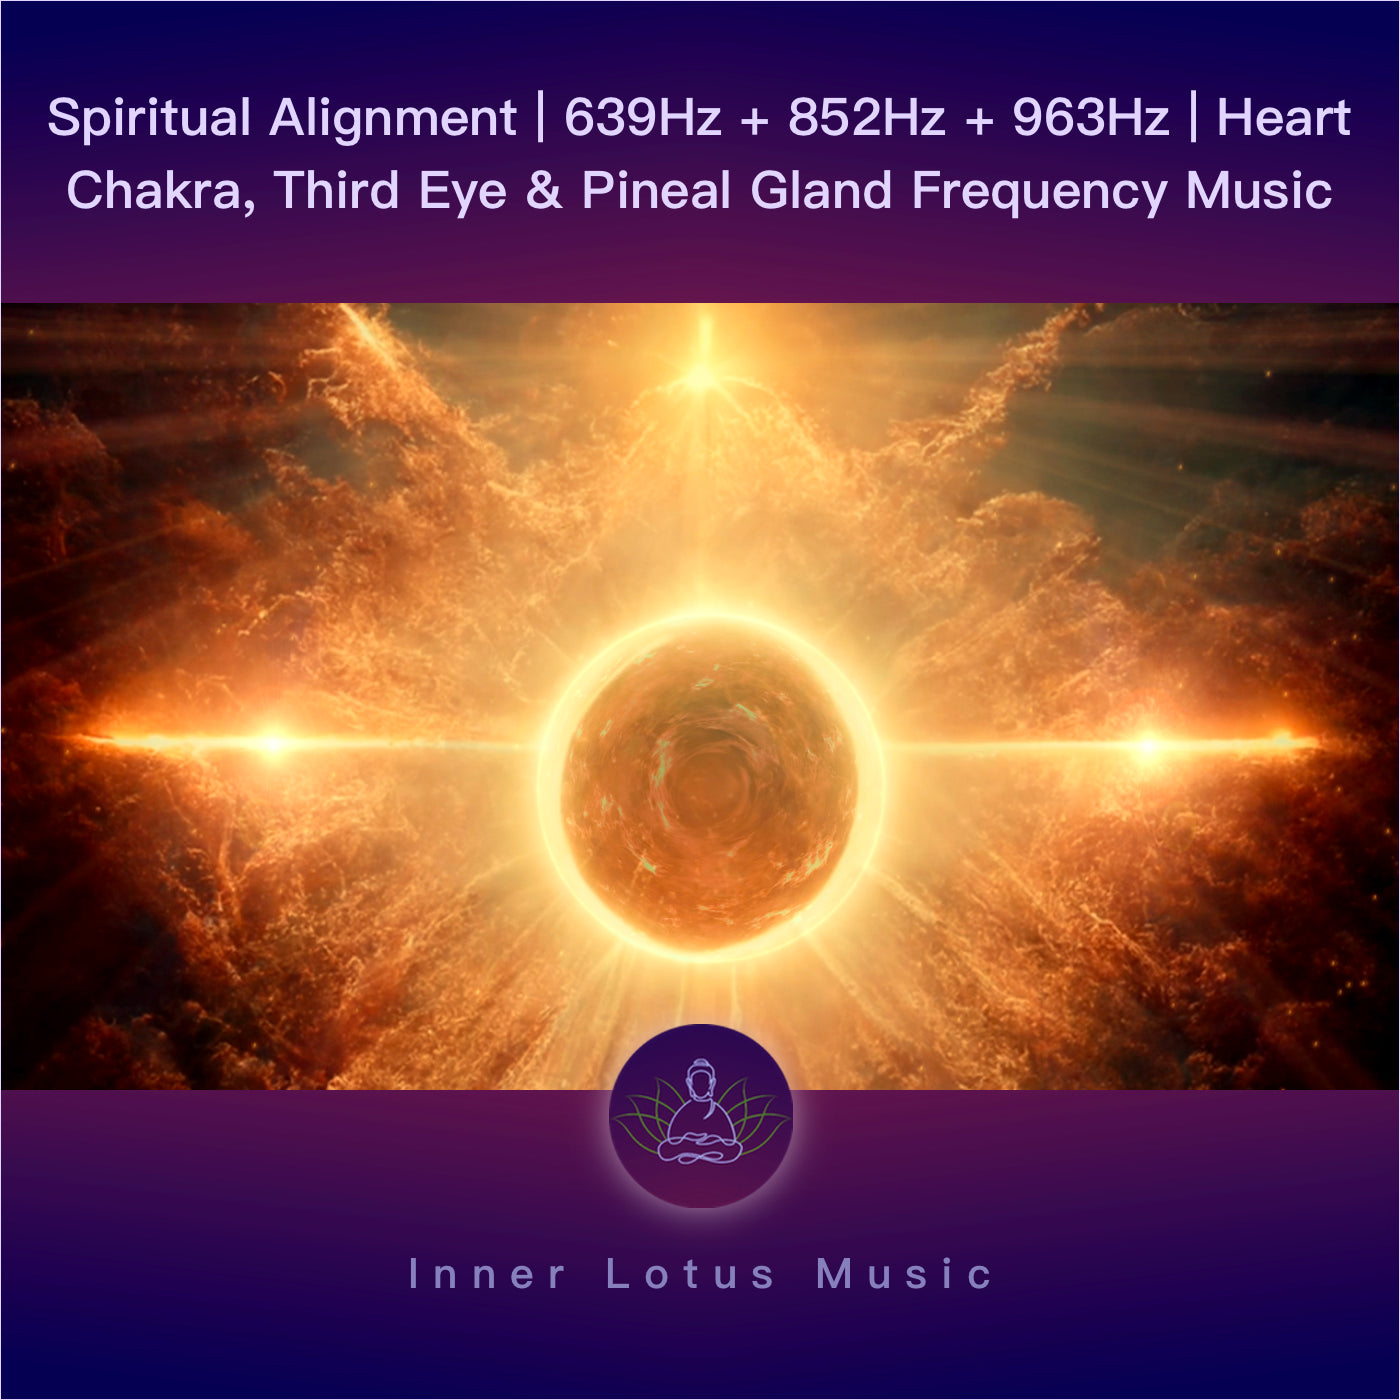 Alineación Espiritual | 639Hz + 852Hz + 963Hz | Música Chakra Corazón, Tercer Ojo y Glándula Pineal